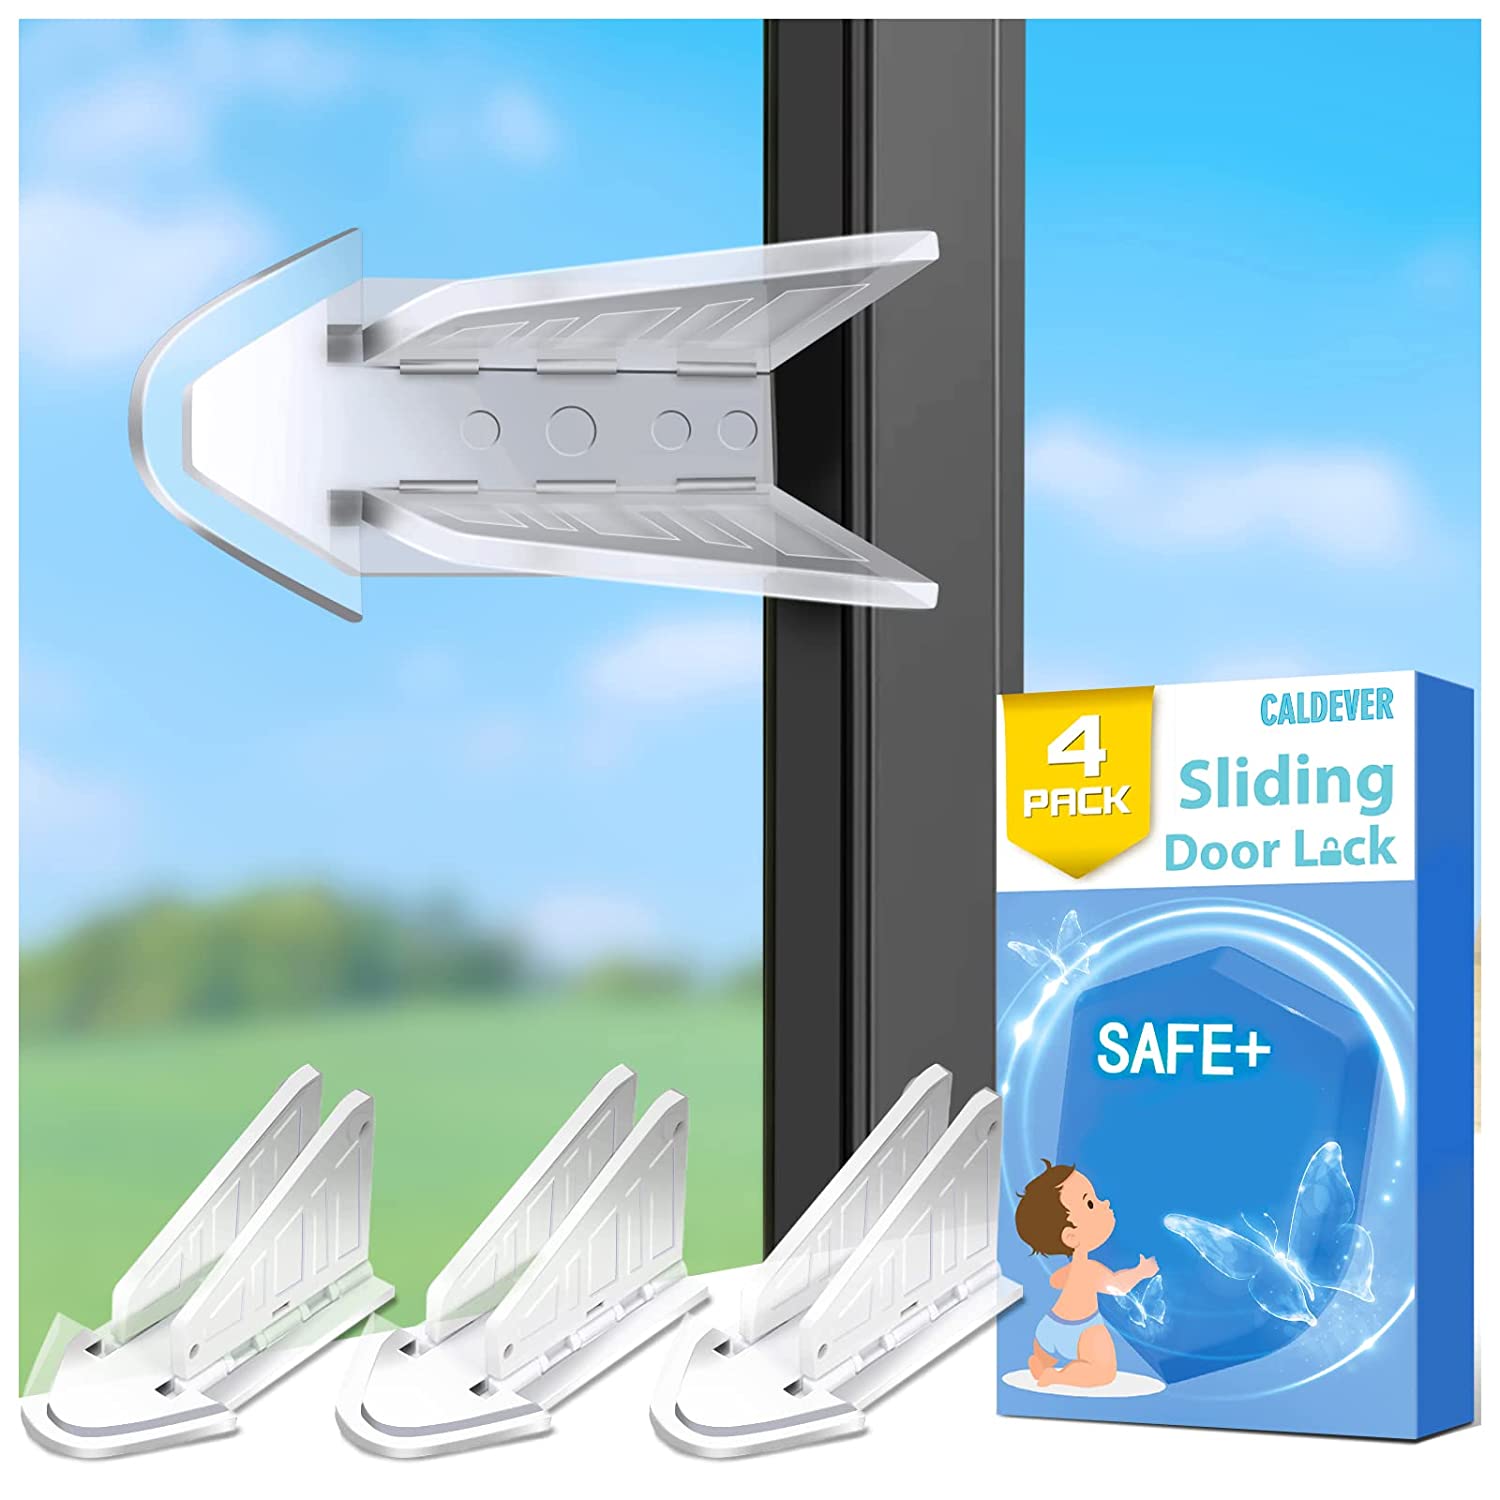 Sliding Door Stop, Window Child Safety Lock, Basafety Lock